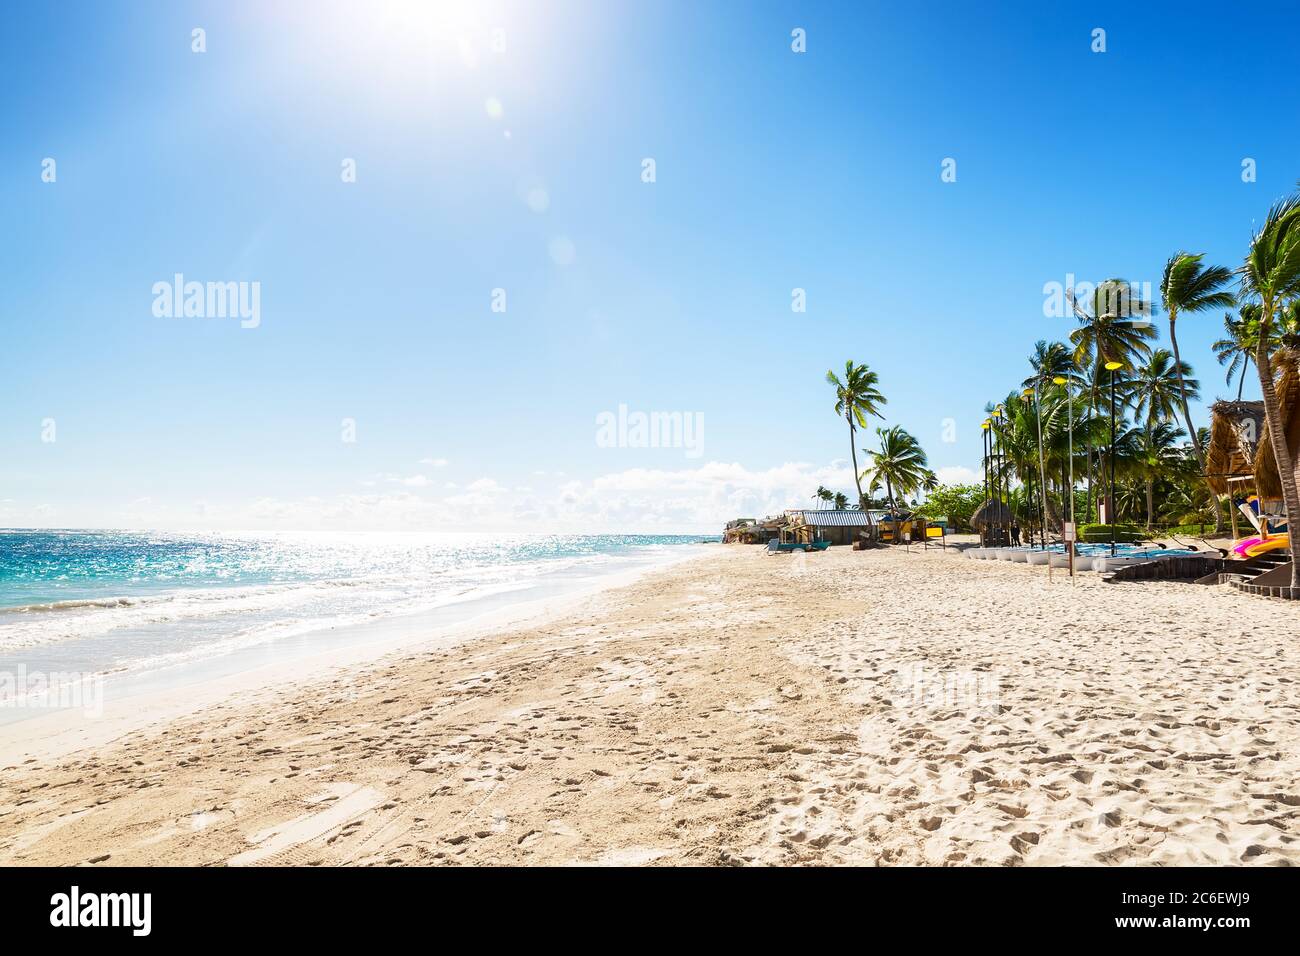 Palmiers à noix de coco sur une plage de sable blanc à Punta Cana, République dominicaine. Concept vacances d'été. Plage tropicale. Banque D'Images